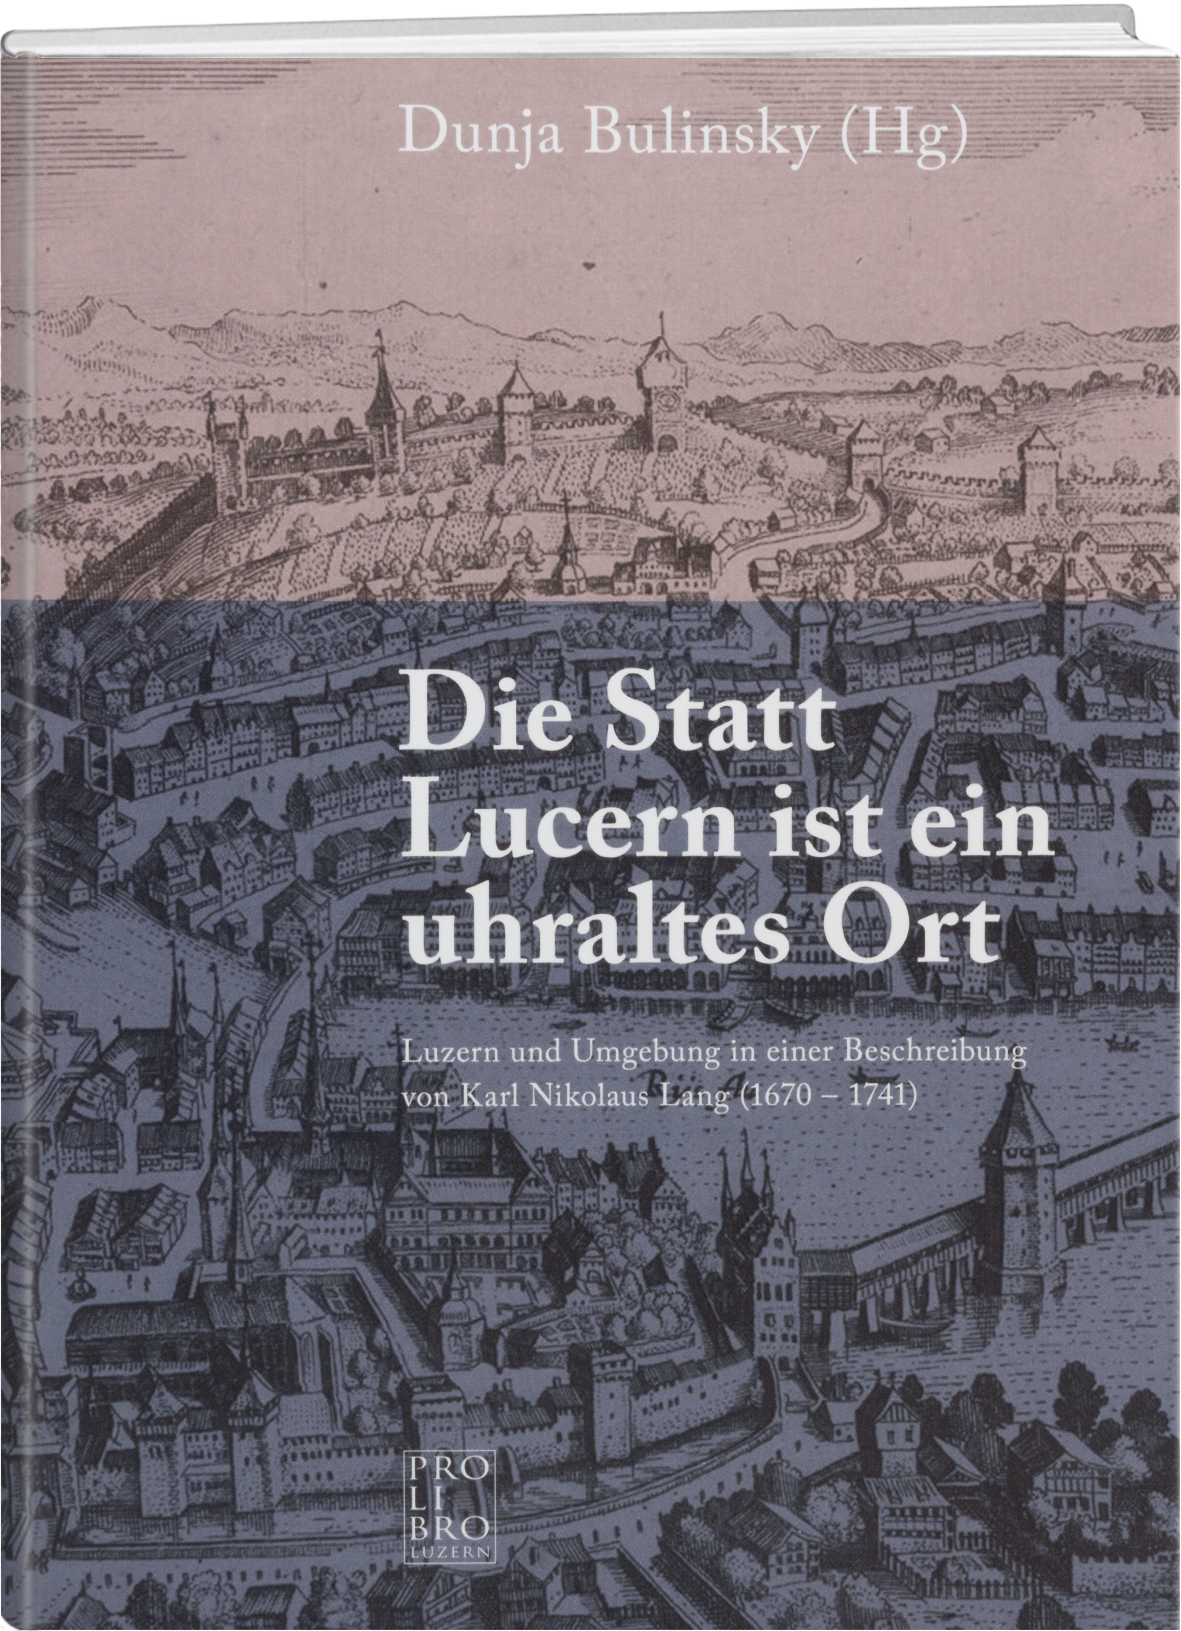 Dunja Bulinsky: Die Statt Lucern ist ein uhraltes Ort - prolibro.ch